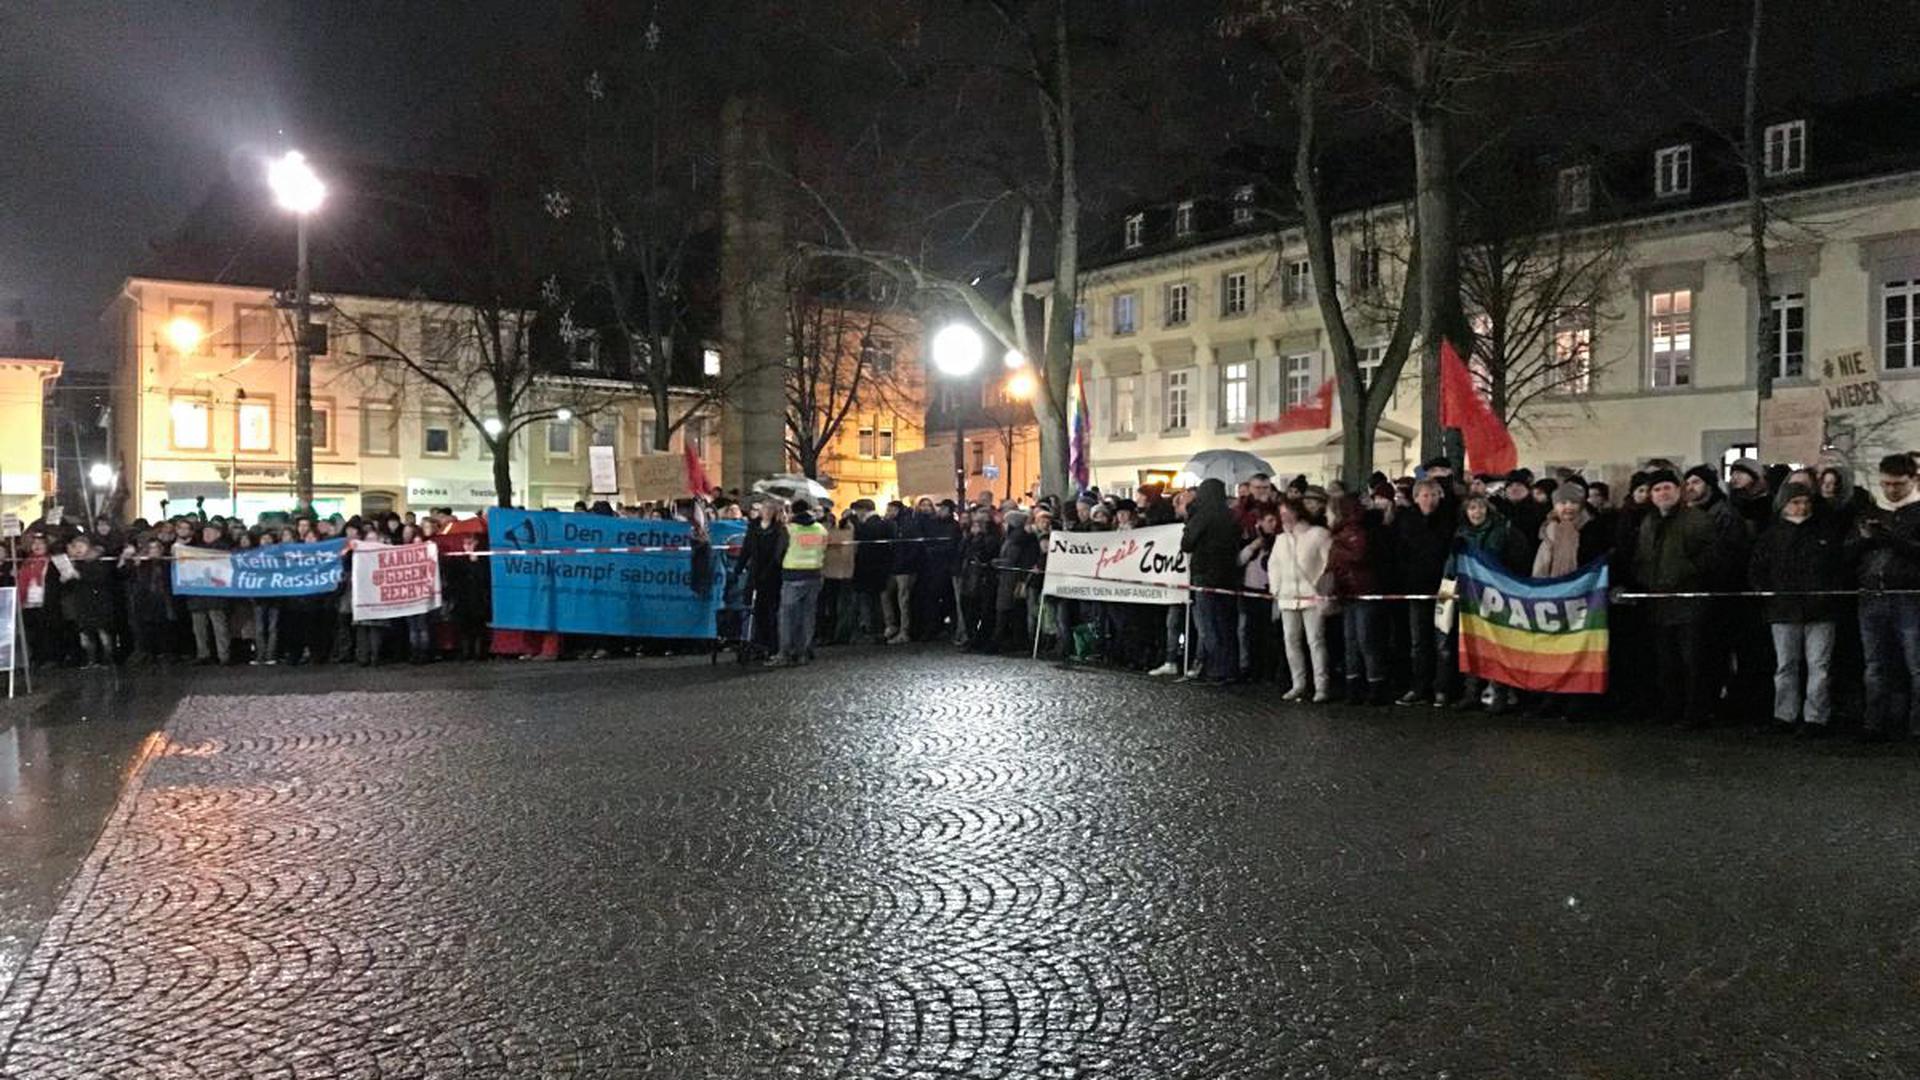 Rund 500 Gegen-Demonstranten sind am Freitagabend vor die Karlsburg gekommen.